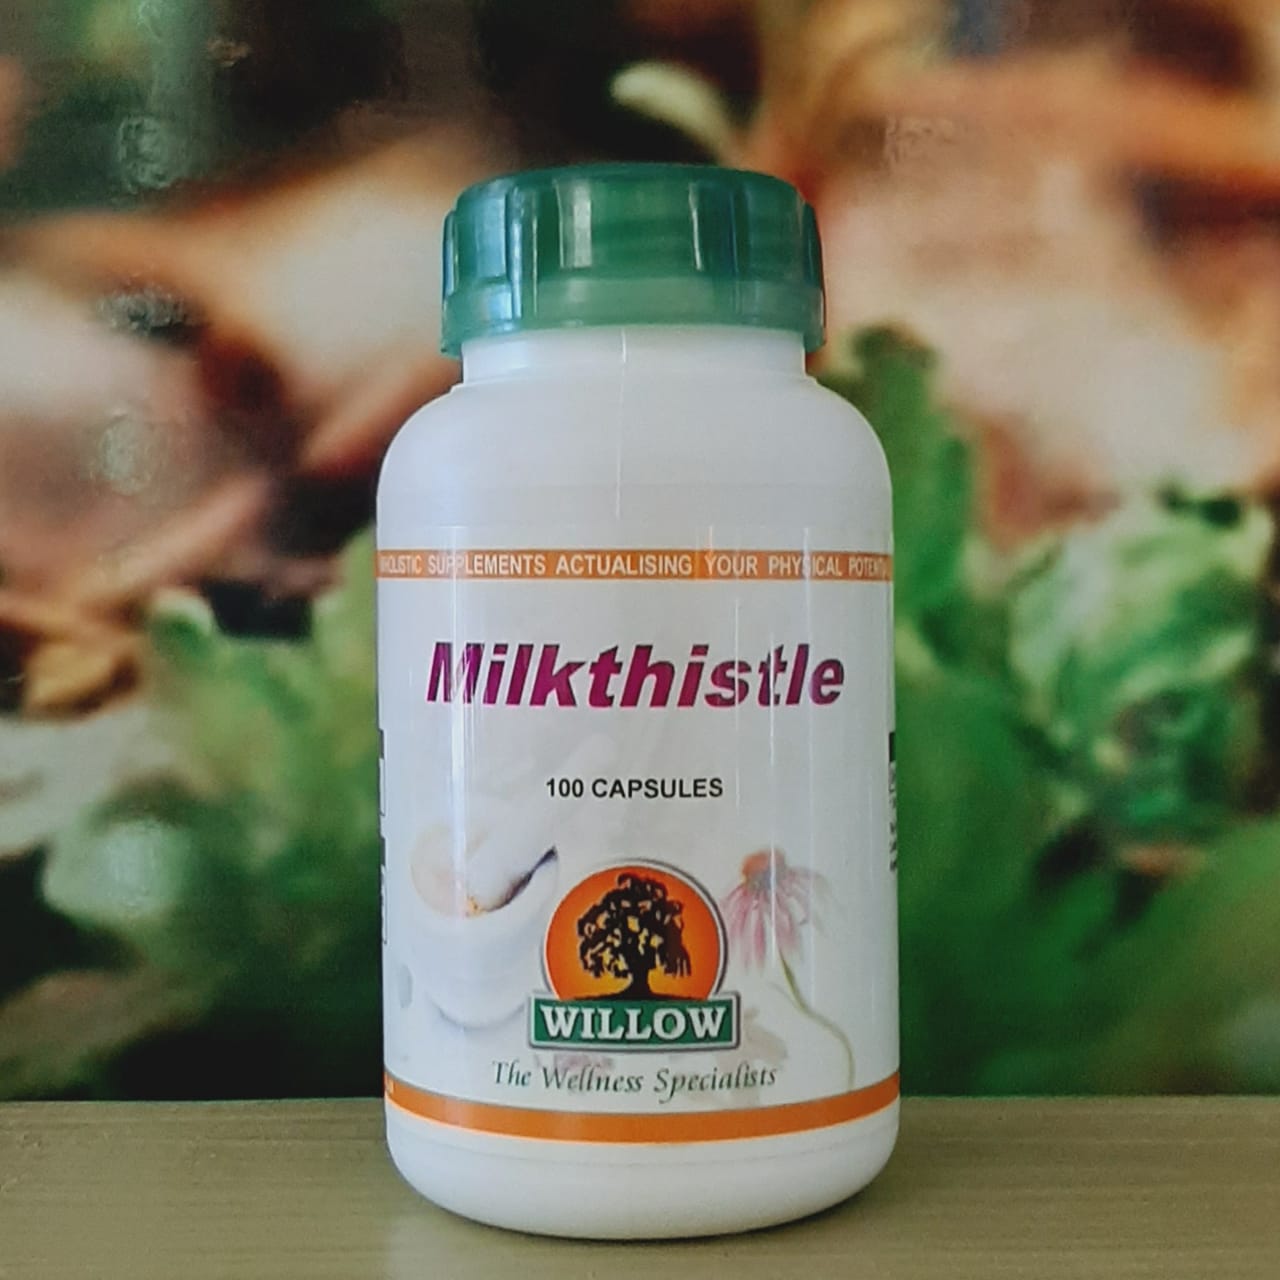 Willow Milkthistle 100 capsules